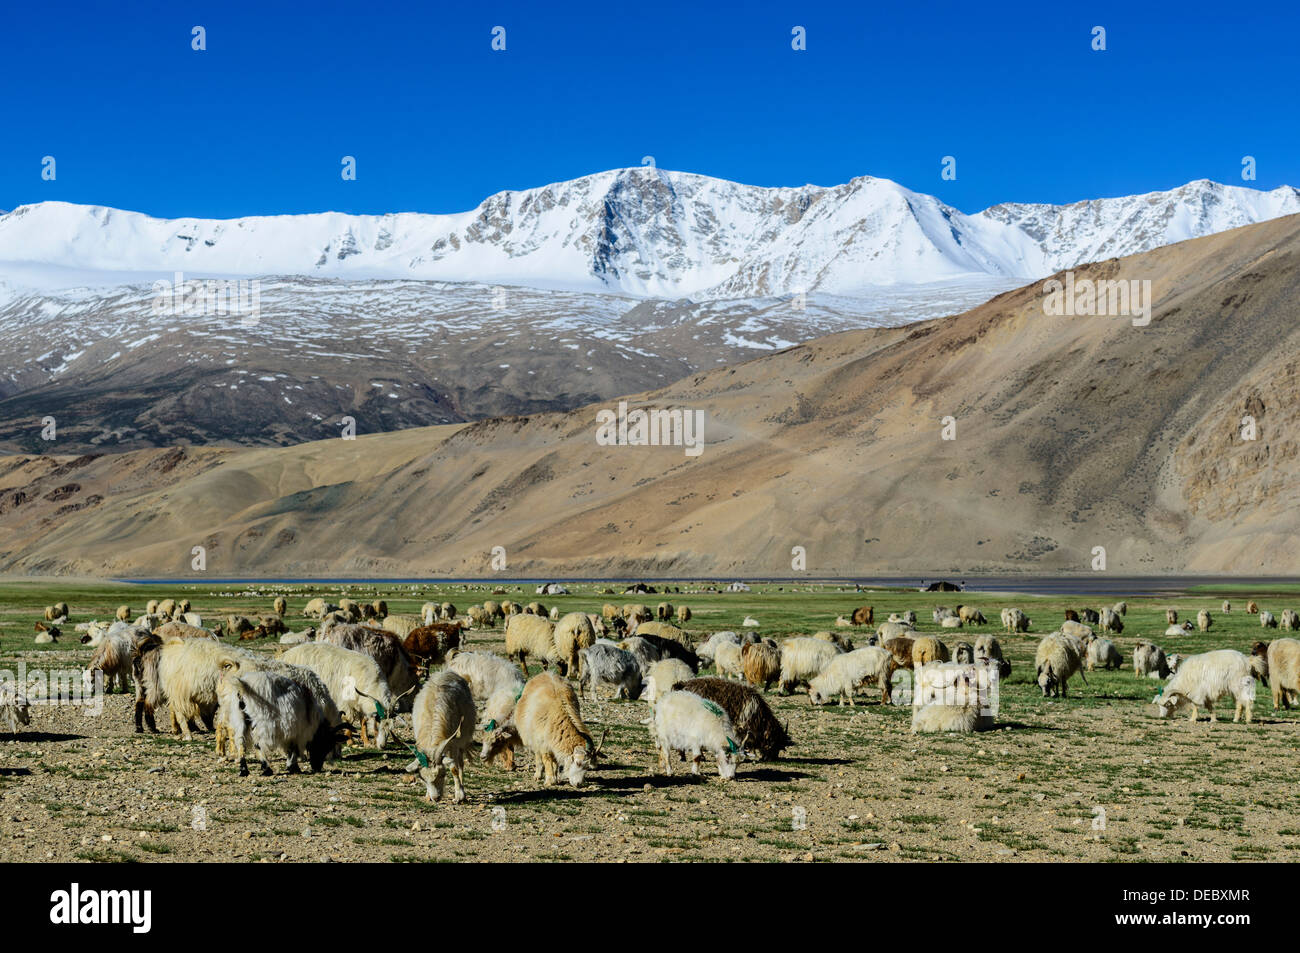 Un rebaño de ovejas es el pastoreo a una altitud de 4.600 m, montañas cubiertas de nieve en la distancia, Korzok, Ladakh, Jammu y Cachemira Foto de stock